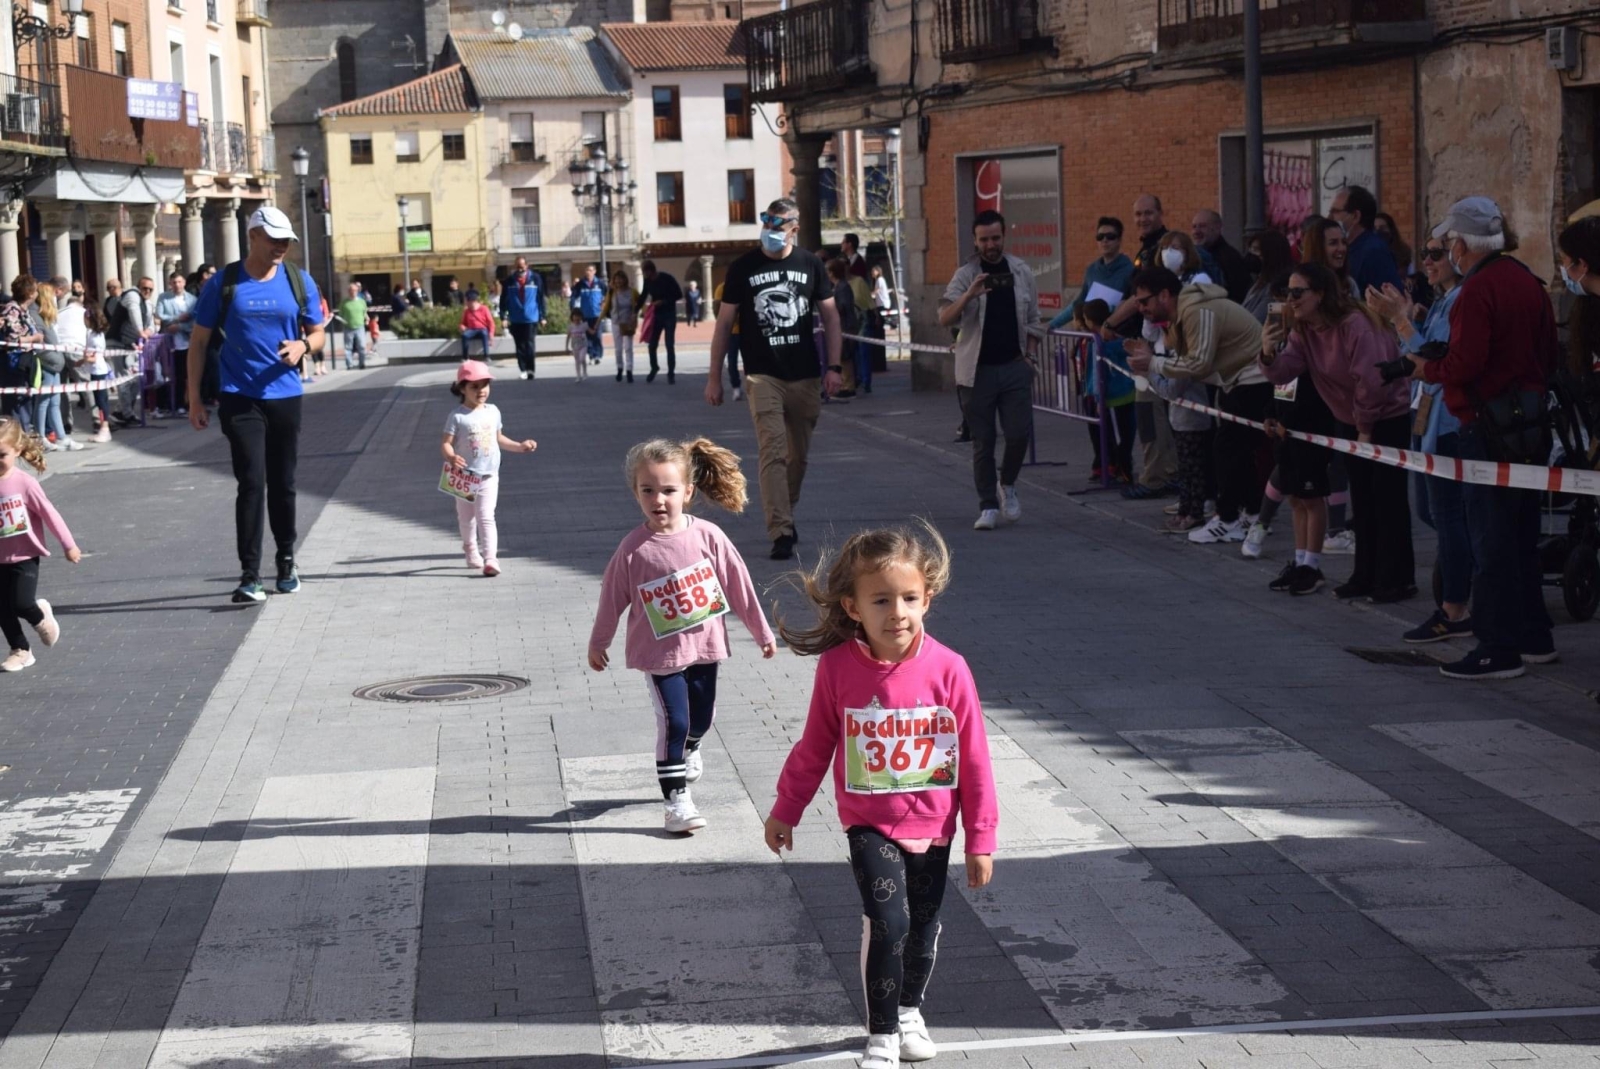 Foto 3 - Vuelve la fiesta del deporte en familia a las calles de Peñaranda con el retorno de la carrera popular 'Hijos, Padres y Abuelos'